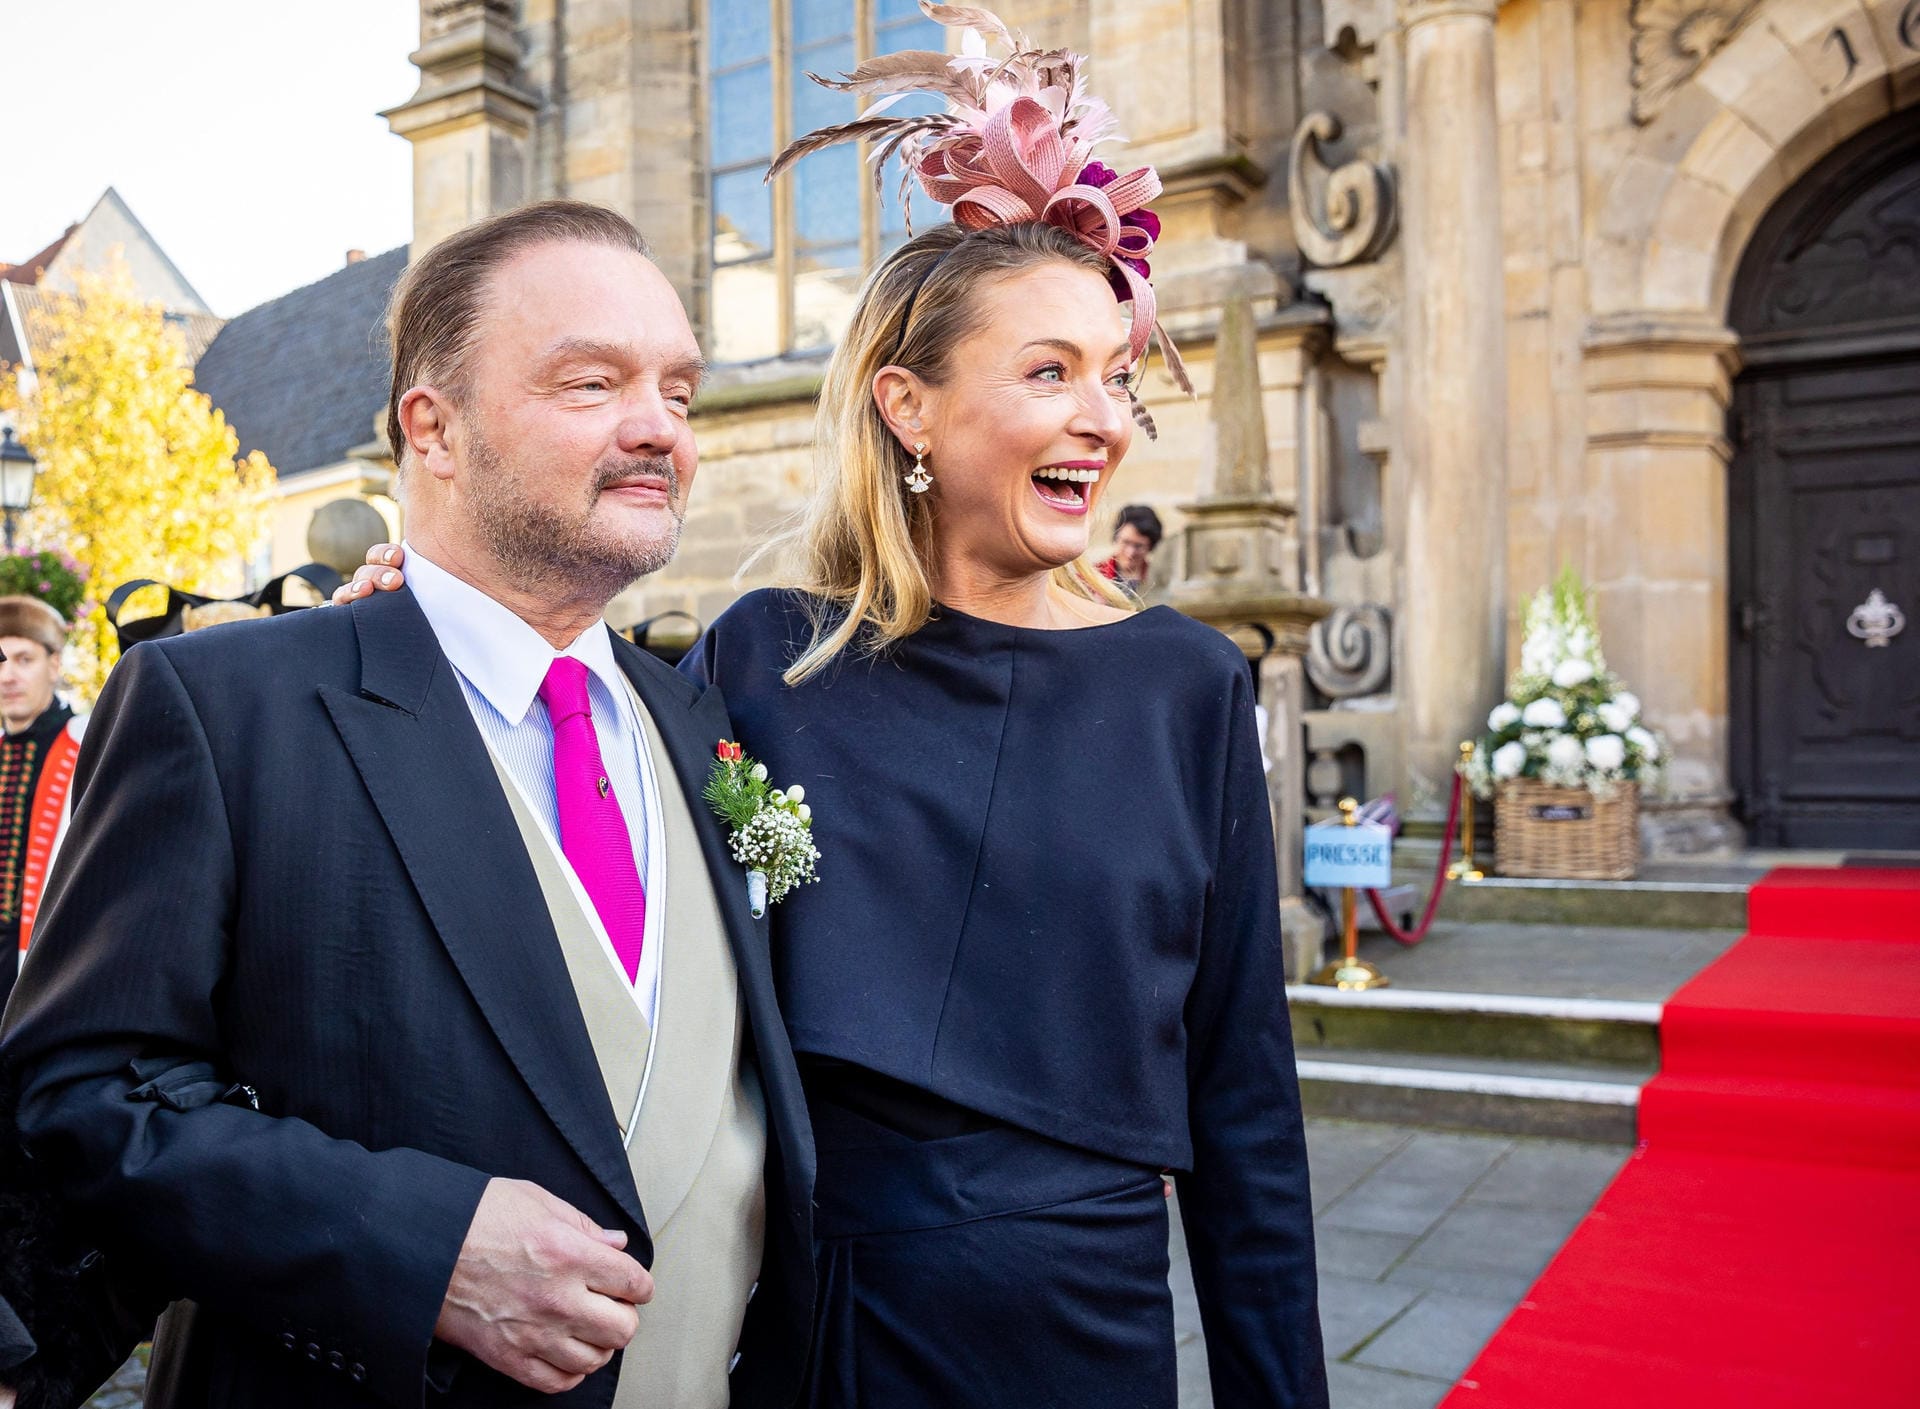 Fürst Alexander zu Schaumburg-Lippe kommt zu seiner kirchlichen Hochzeit an der Seite seiner ersten Ehefrau Lilly Prinzessin zu Sayn-Wittgenstein-Berleburg an.